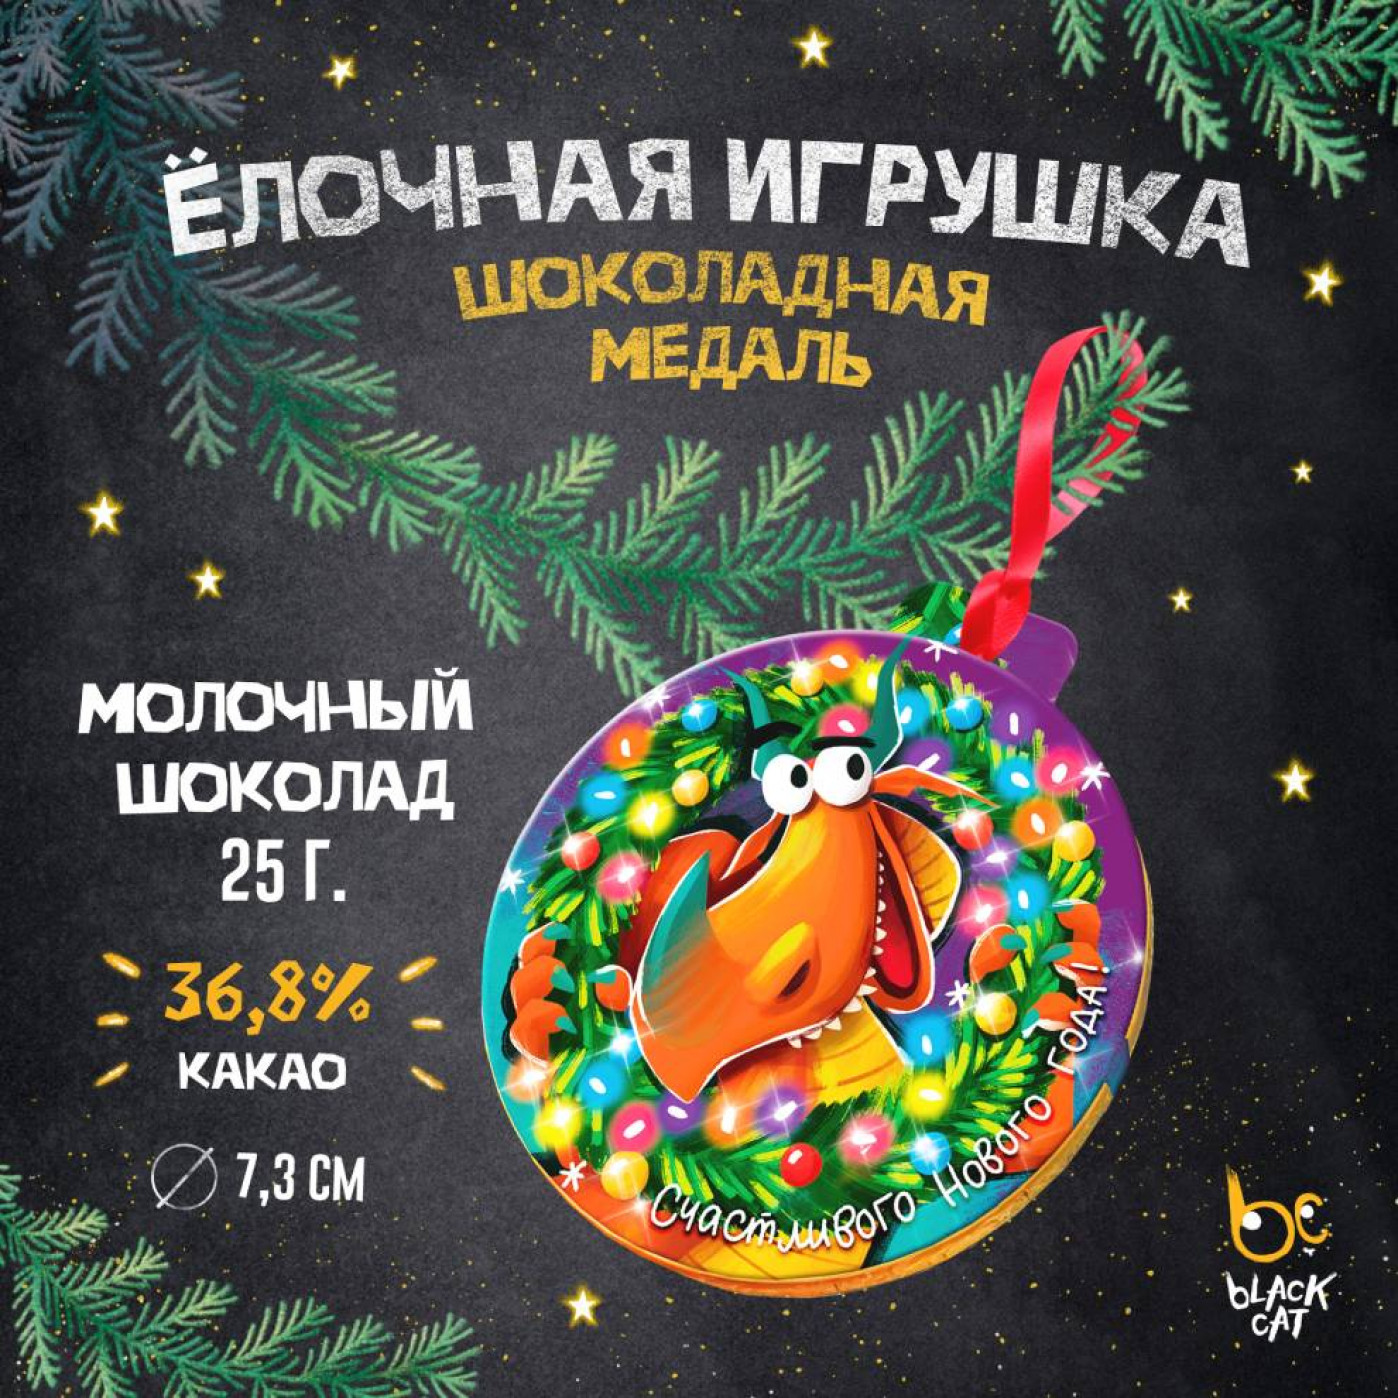 Искусственные елки, украшенные игрушками и огнями, купить в интернет-магазине malino-v.ru